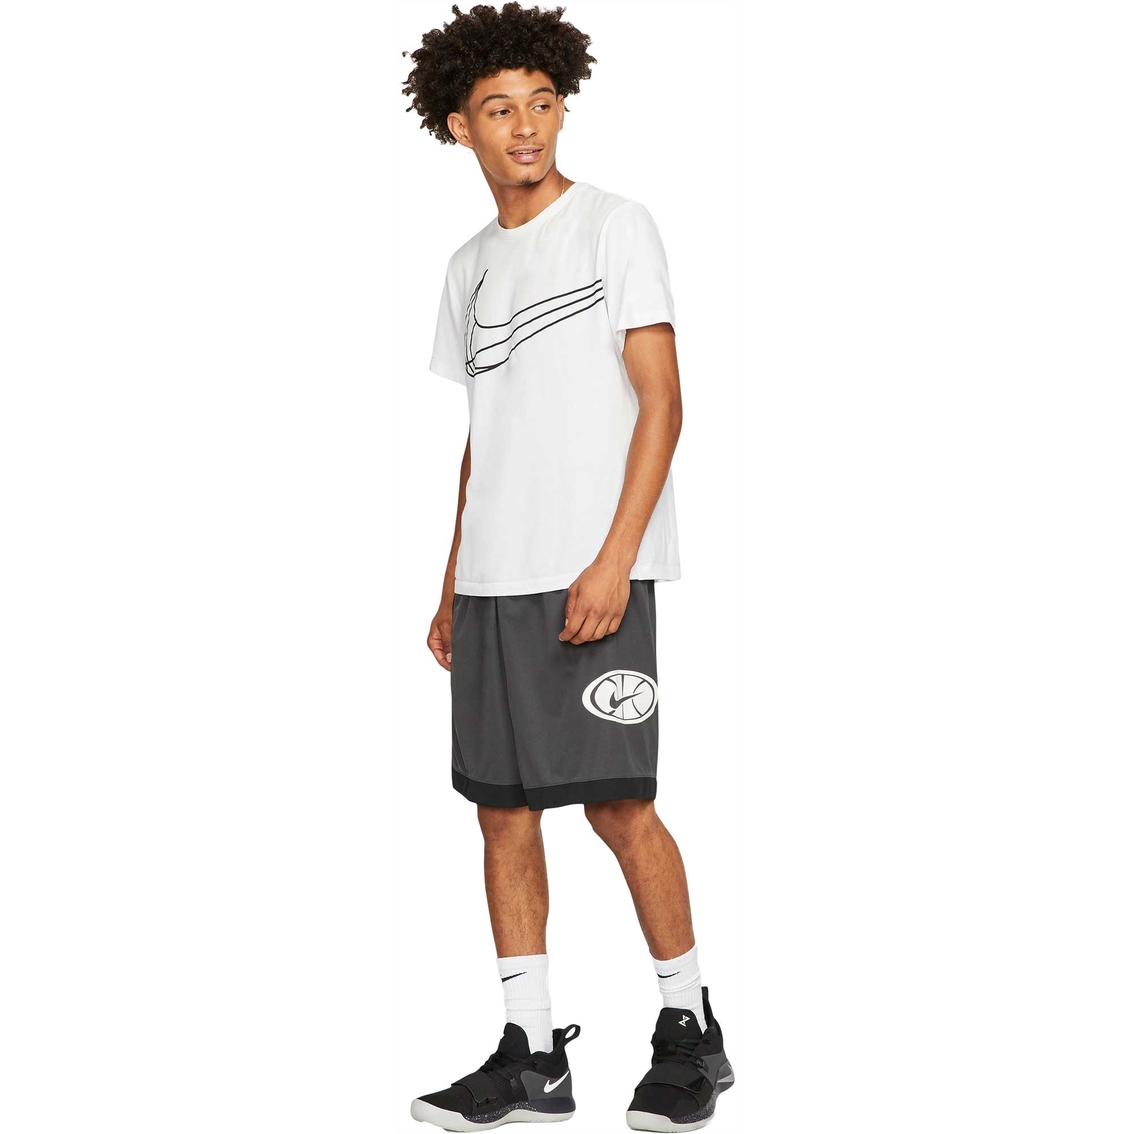 Nike Dry Blocked Asym Basketball Shorts - Image 3 of 5